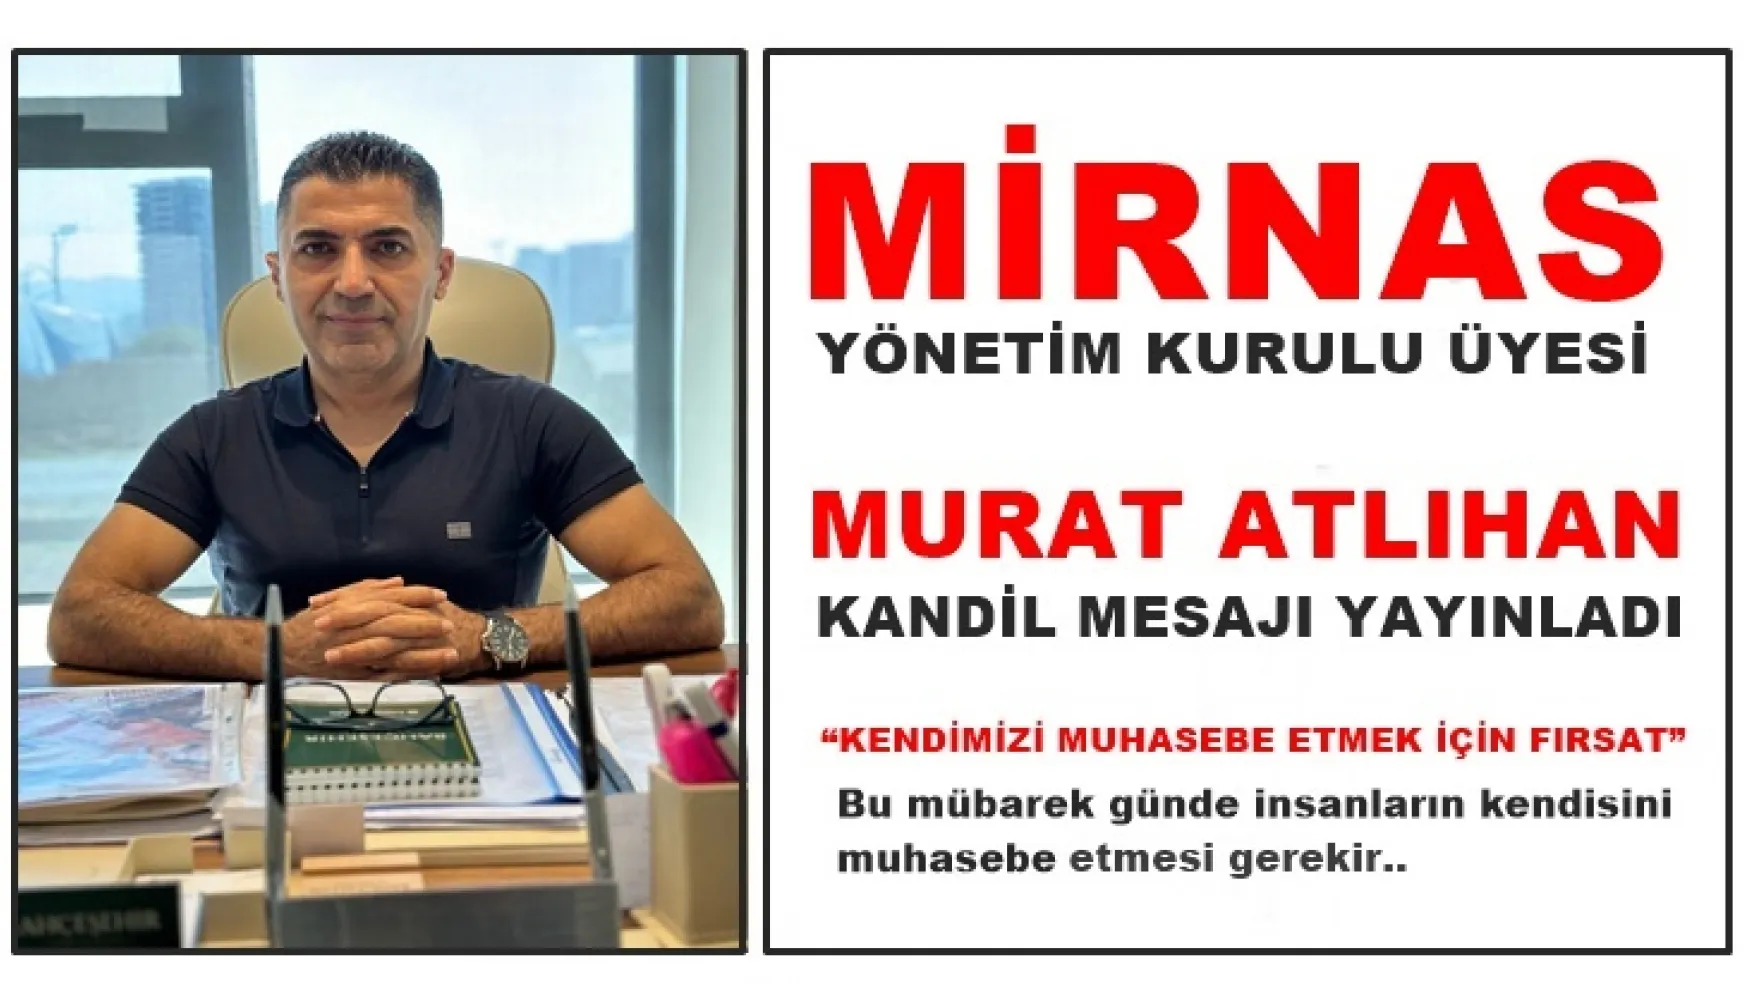 Mirnas Yönetim Kurulu Üyesi Murat Atlıhan, Kandil Mesajı Yayınladı